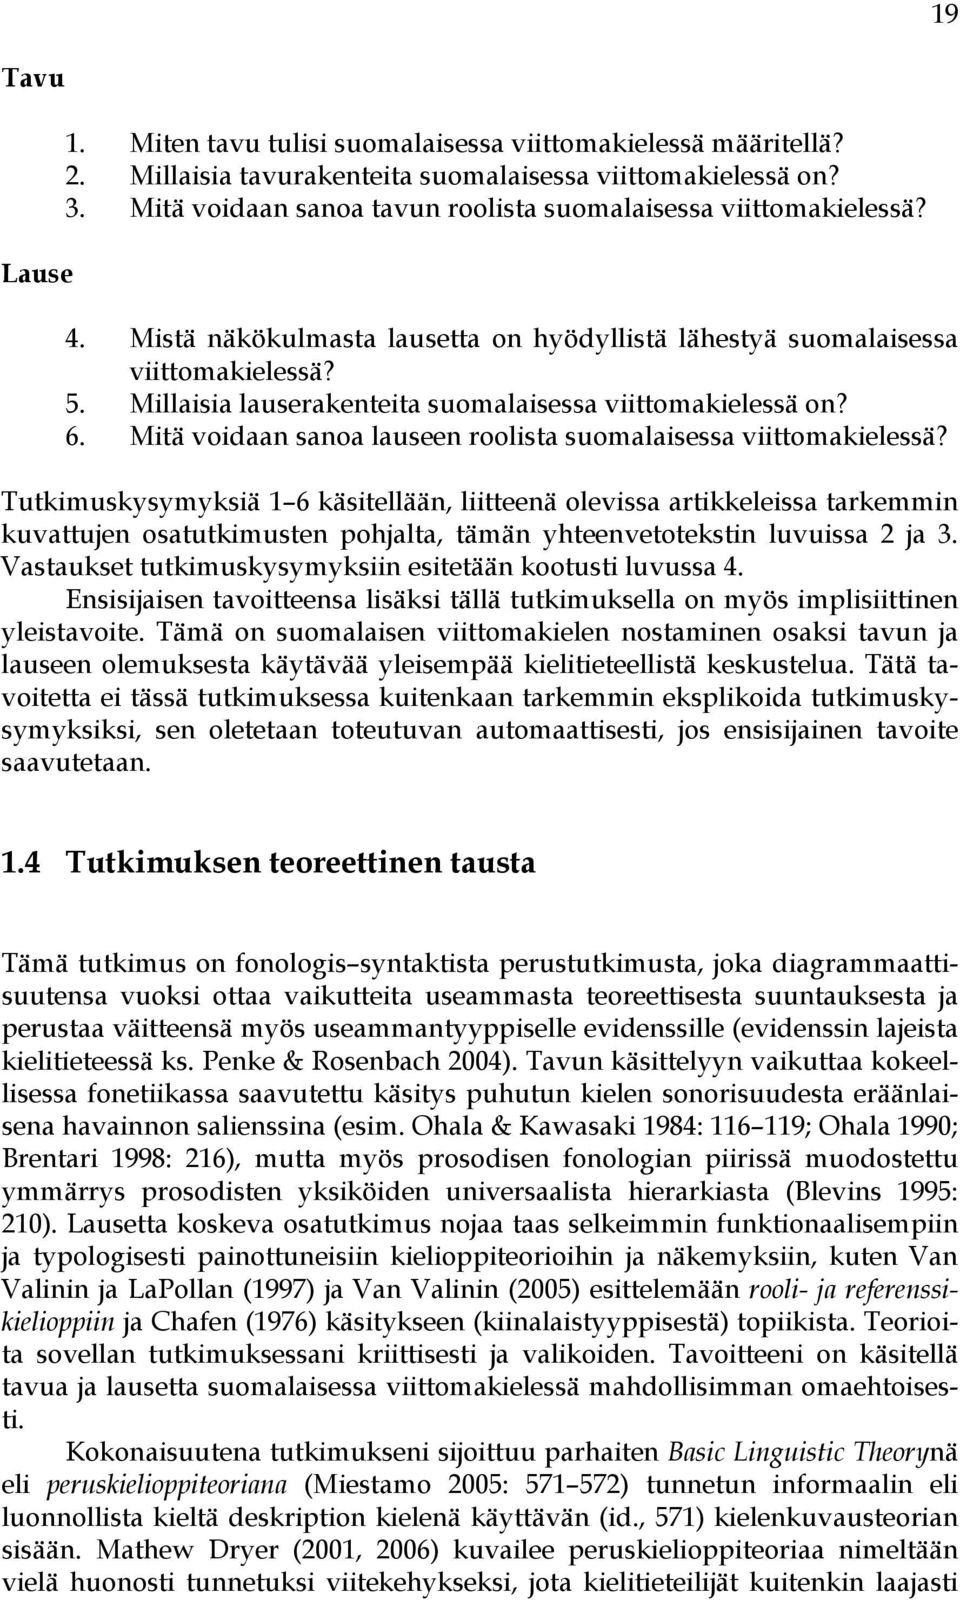 Millaisia lauserakenteita suomalaisessa viittomakielessä on? 6. Mitä voidaan sanoa lauseen roolista suomalaisessa viittomakielessä?